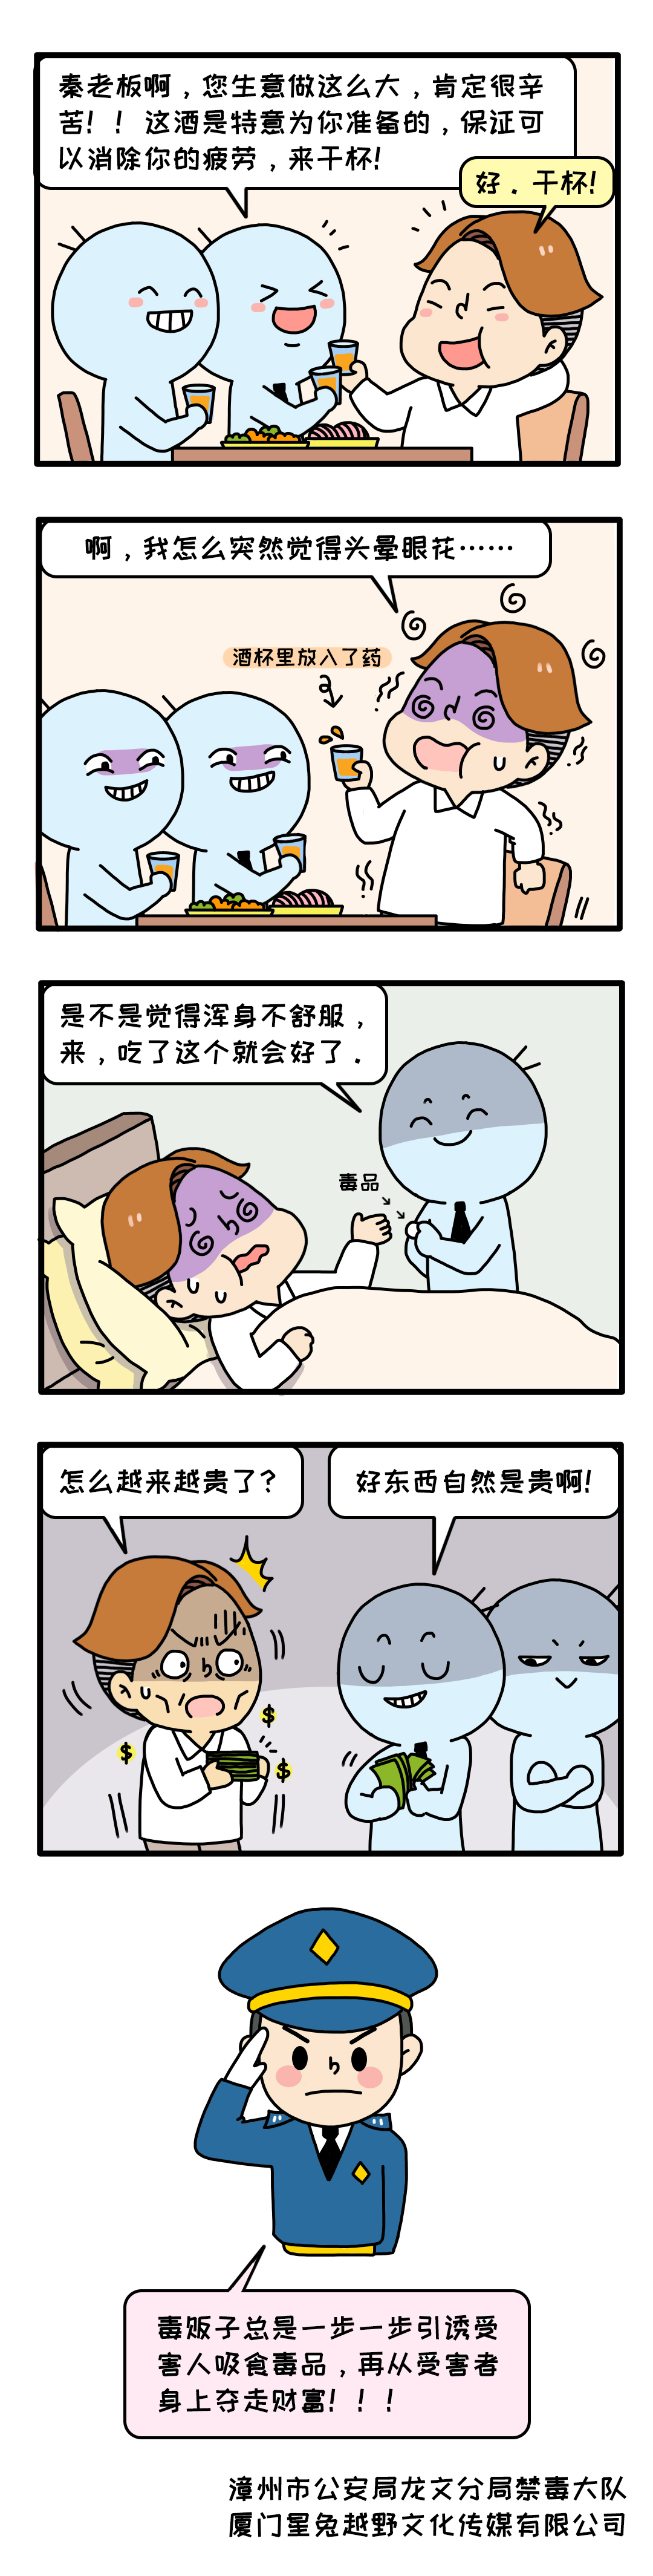 禁毒小漫画4